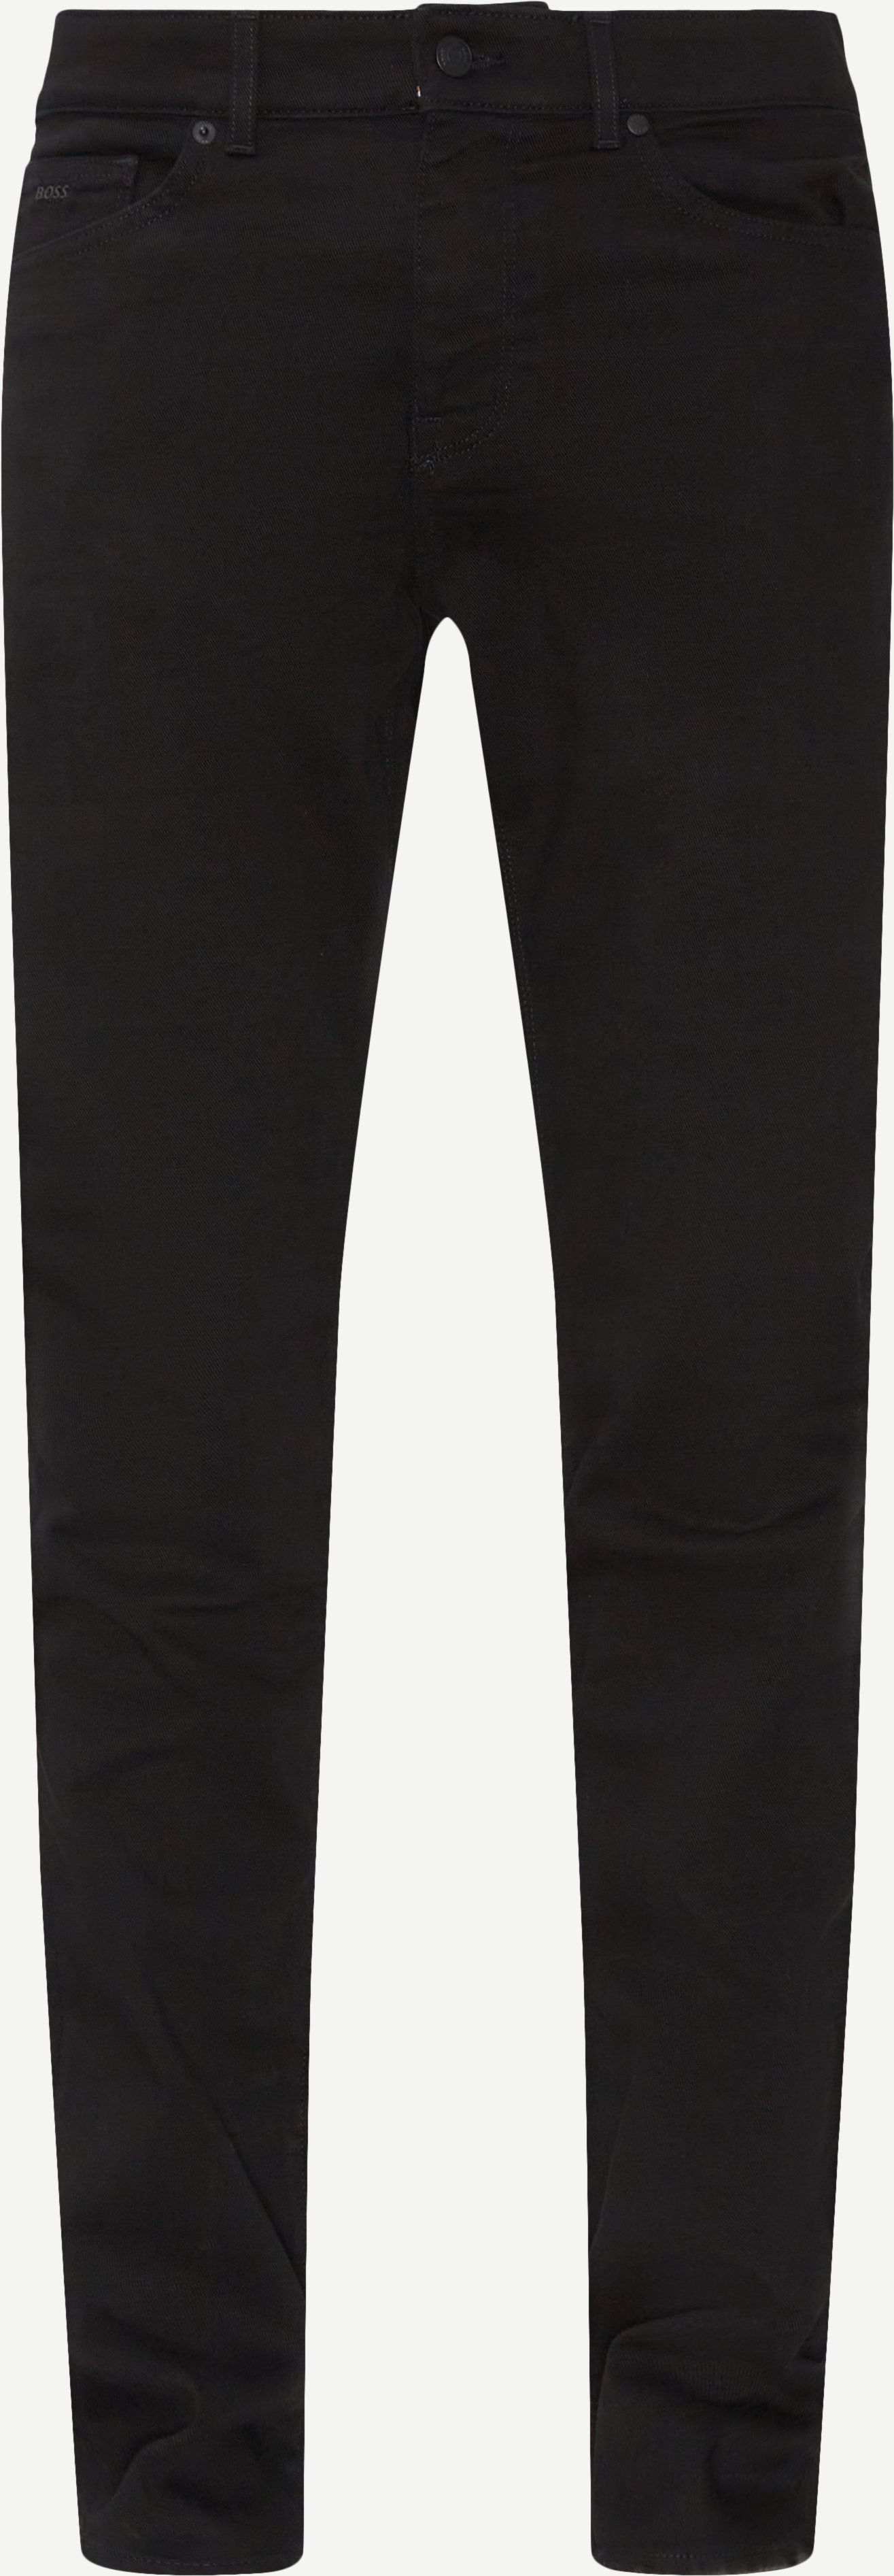 Jeans - Regular fit - Black